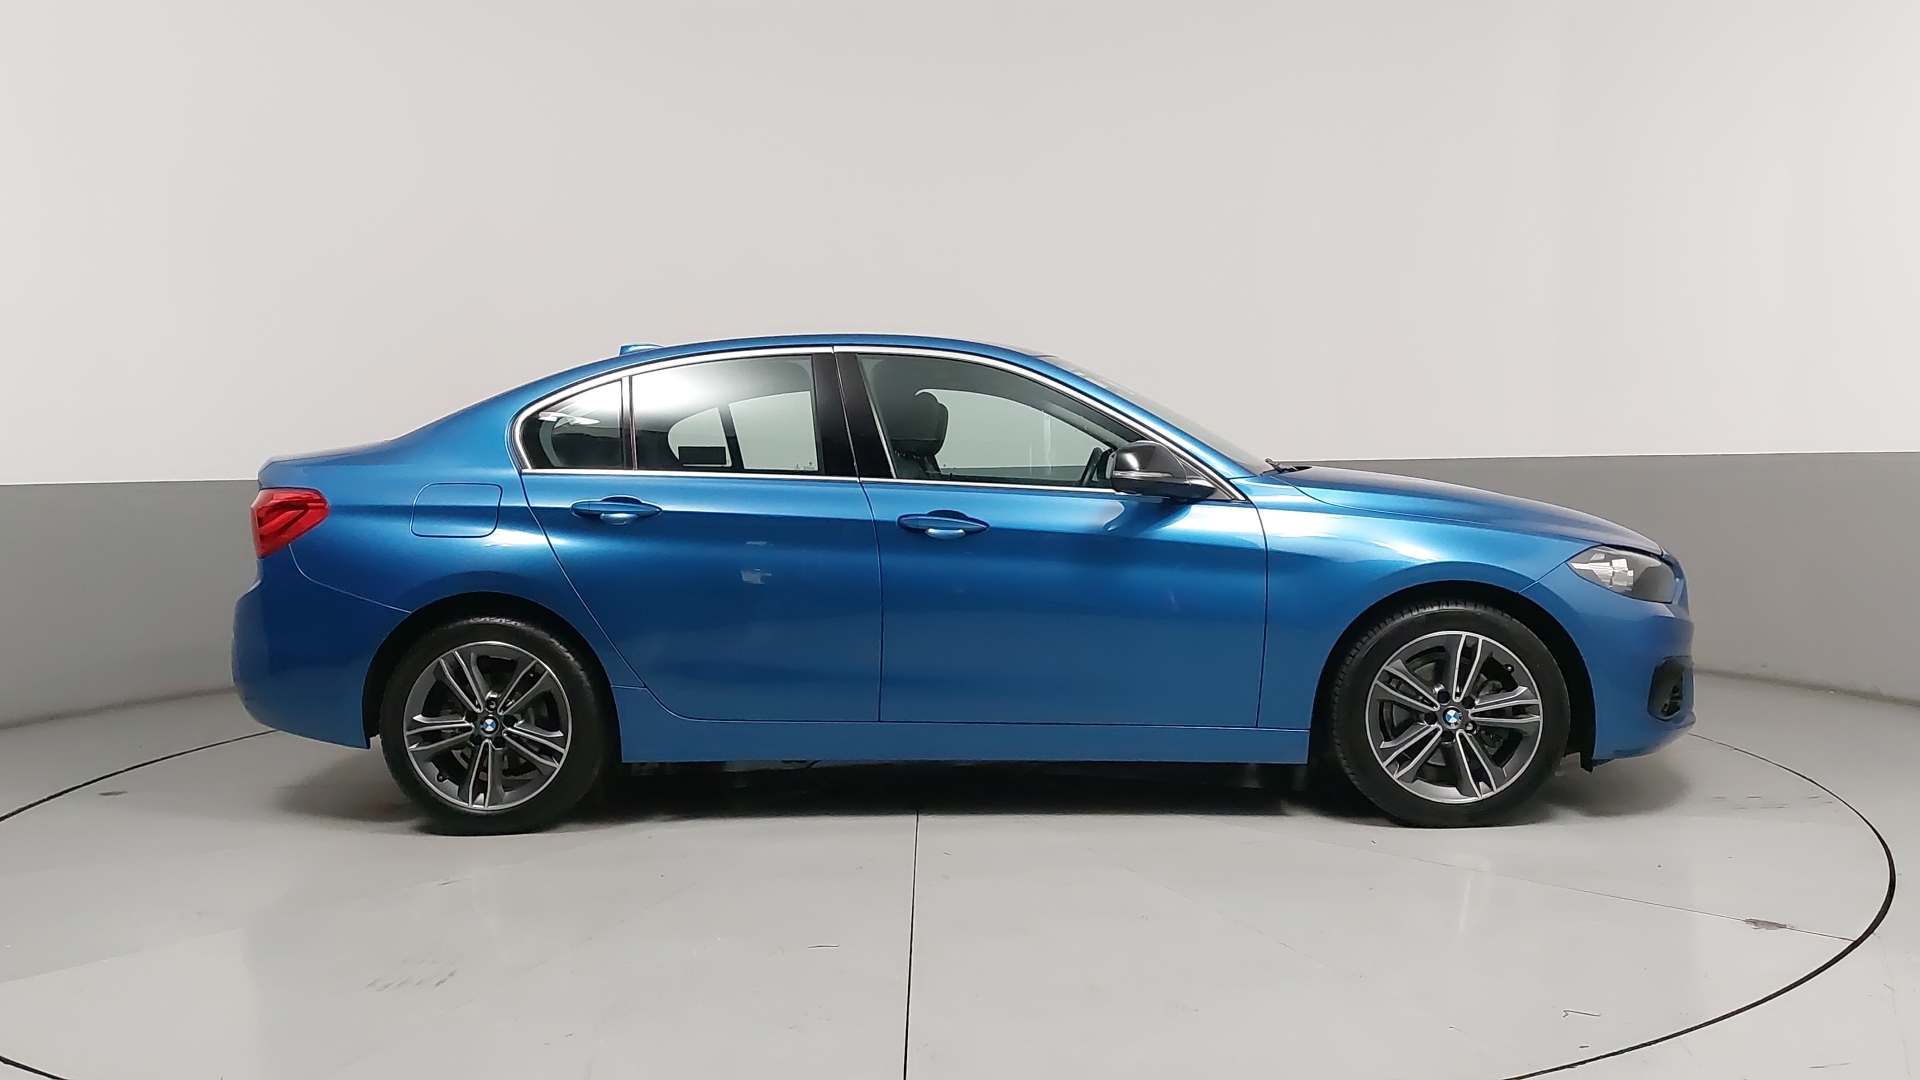 BMW Serie 1 Sedán 2019 llega a México desde $489,900 pesos